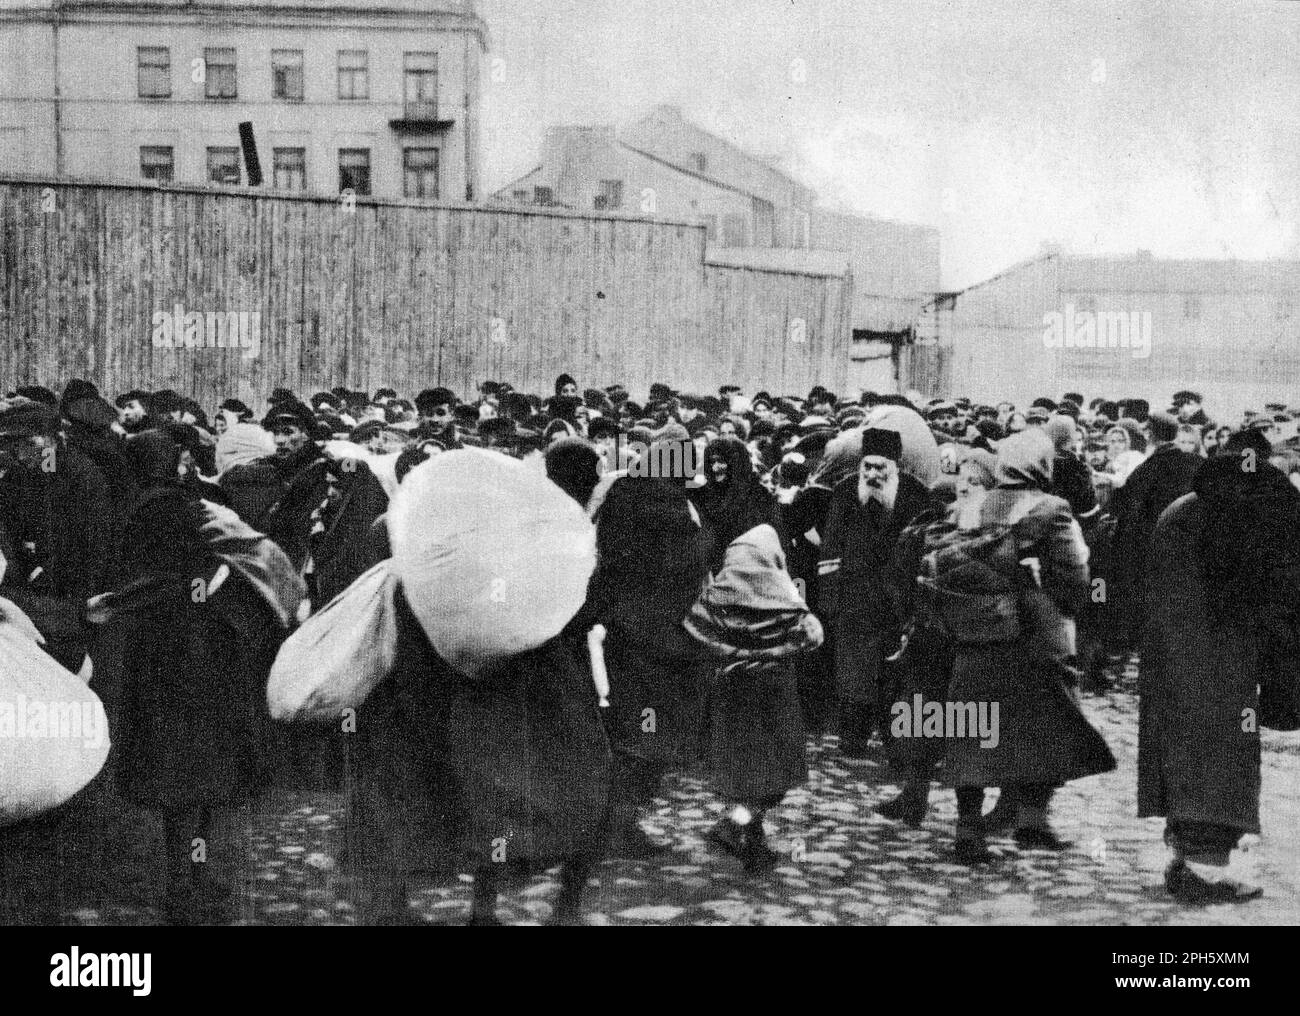 Deportazione di ebrei a Bełżec da Zamość, aprile 1942. Belzec fu un centro di sterminio costruito per uccidere gli ebrei di Lublino e di Lublino. Circa 450.000 persone sono state uccise prima della chiusura e dell'eradicazione nel 1943. Pochissime foto di essa esistono come la sua operazione era segreta e si è chiusa prima che gli alleati sono venuti in modo da non ci sono immagini di liberazione post come si vede da Dachau e Auschwitz. Solo 7 persone sono sopravvissute a Belzec. Foto Stock